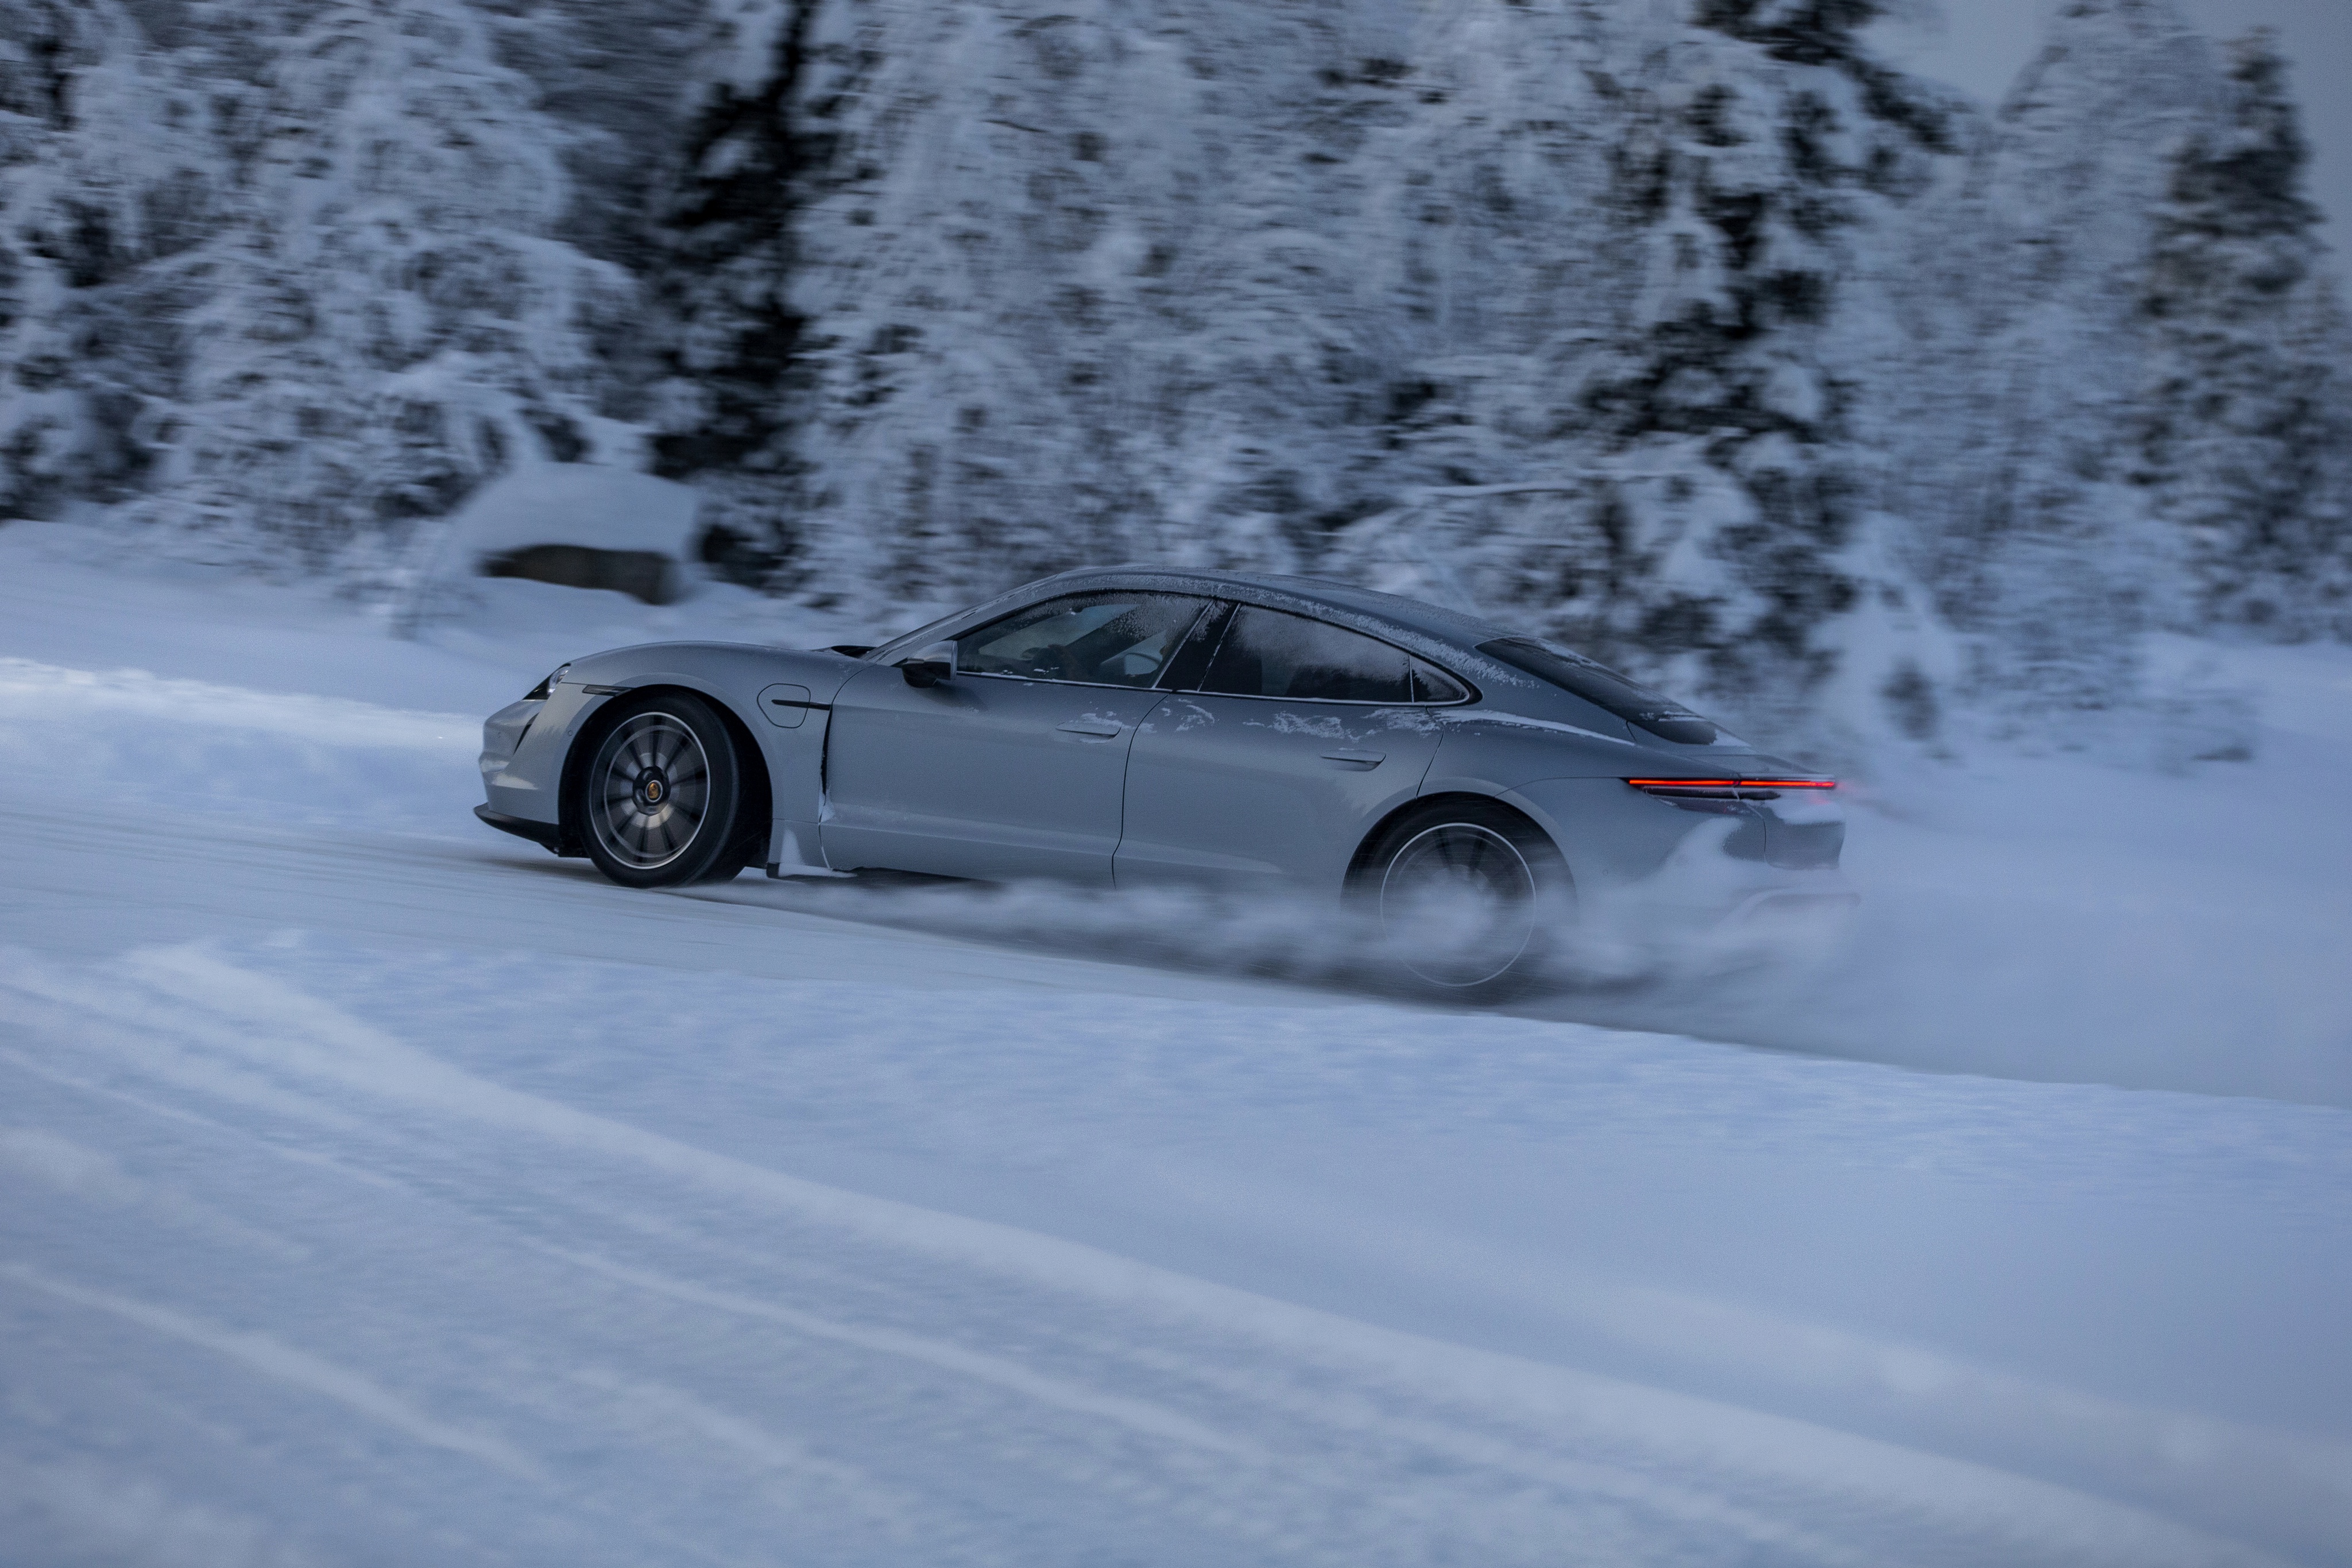 Porsche Snow